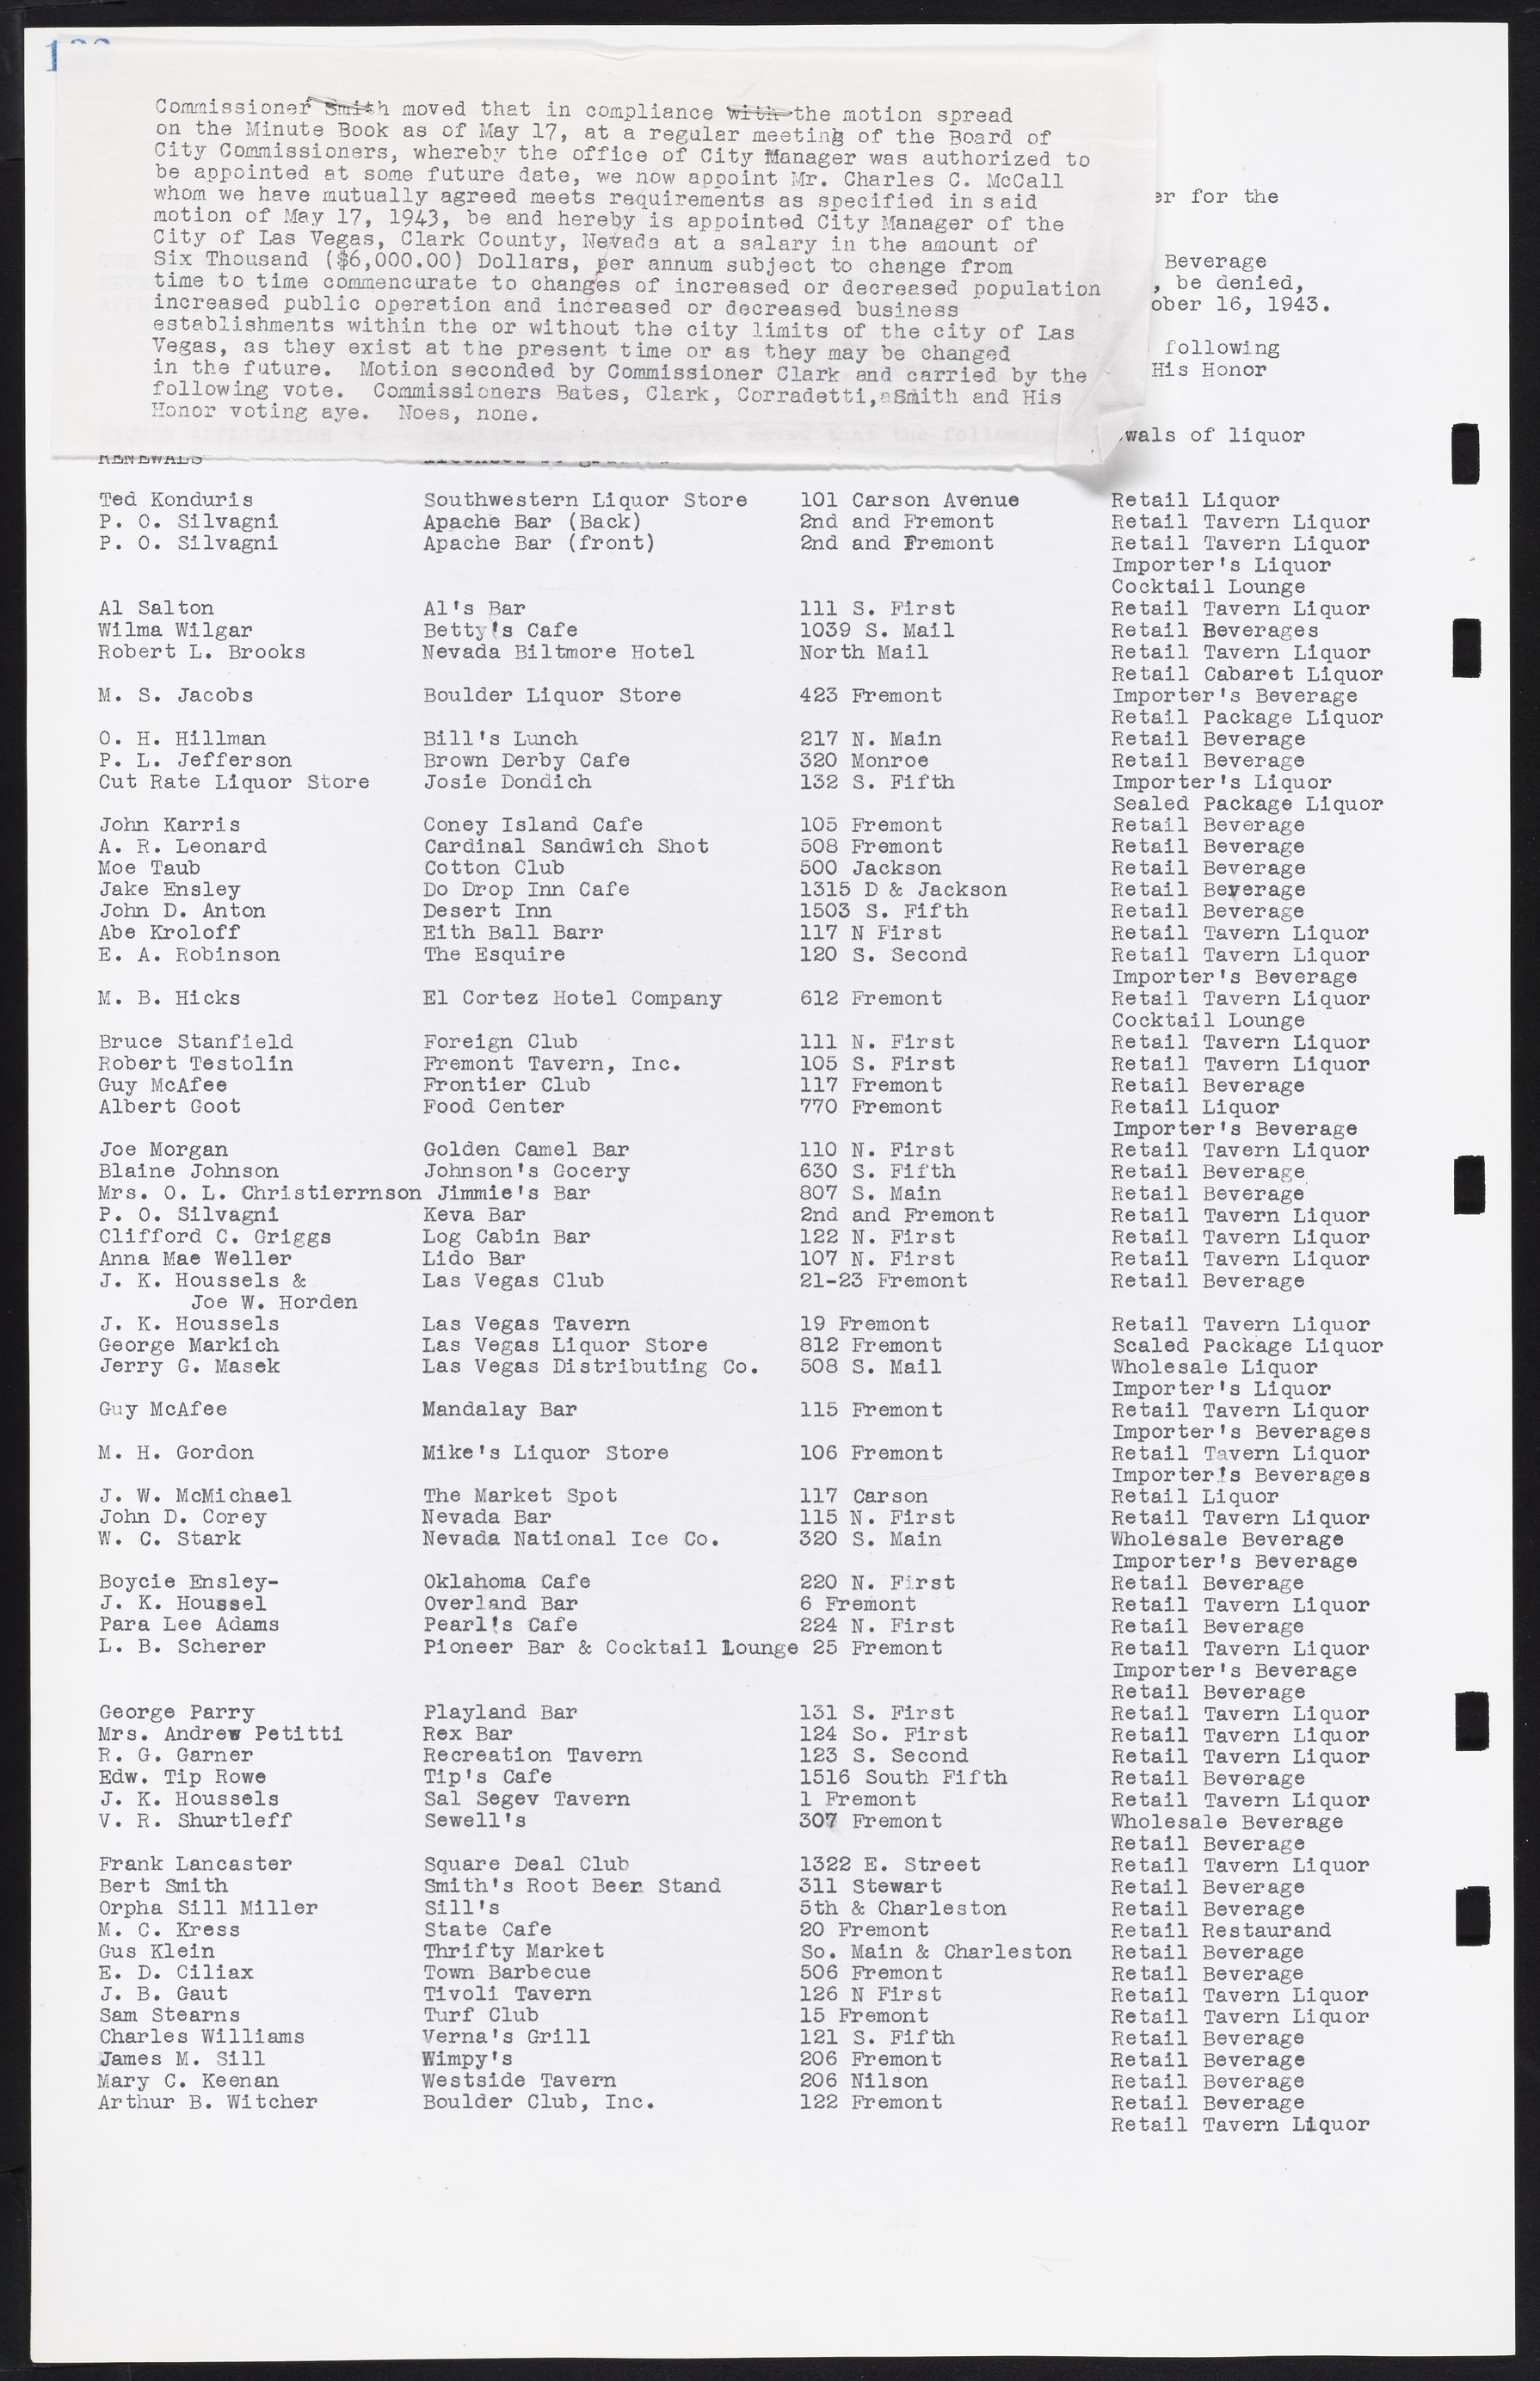 Las Vegas City Commission Minutes, August 11, 1942 to December 30, 1946, lvc000005-146